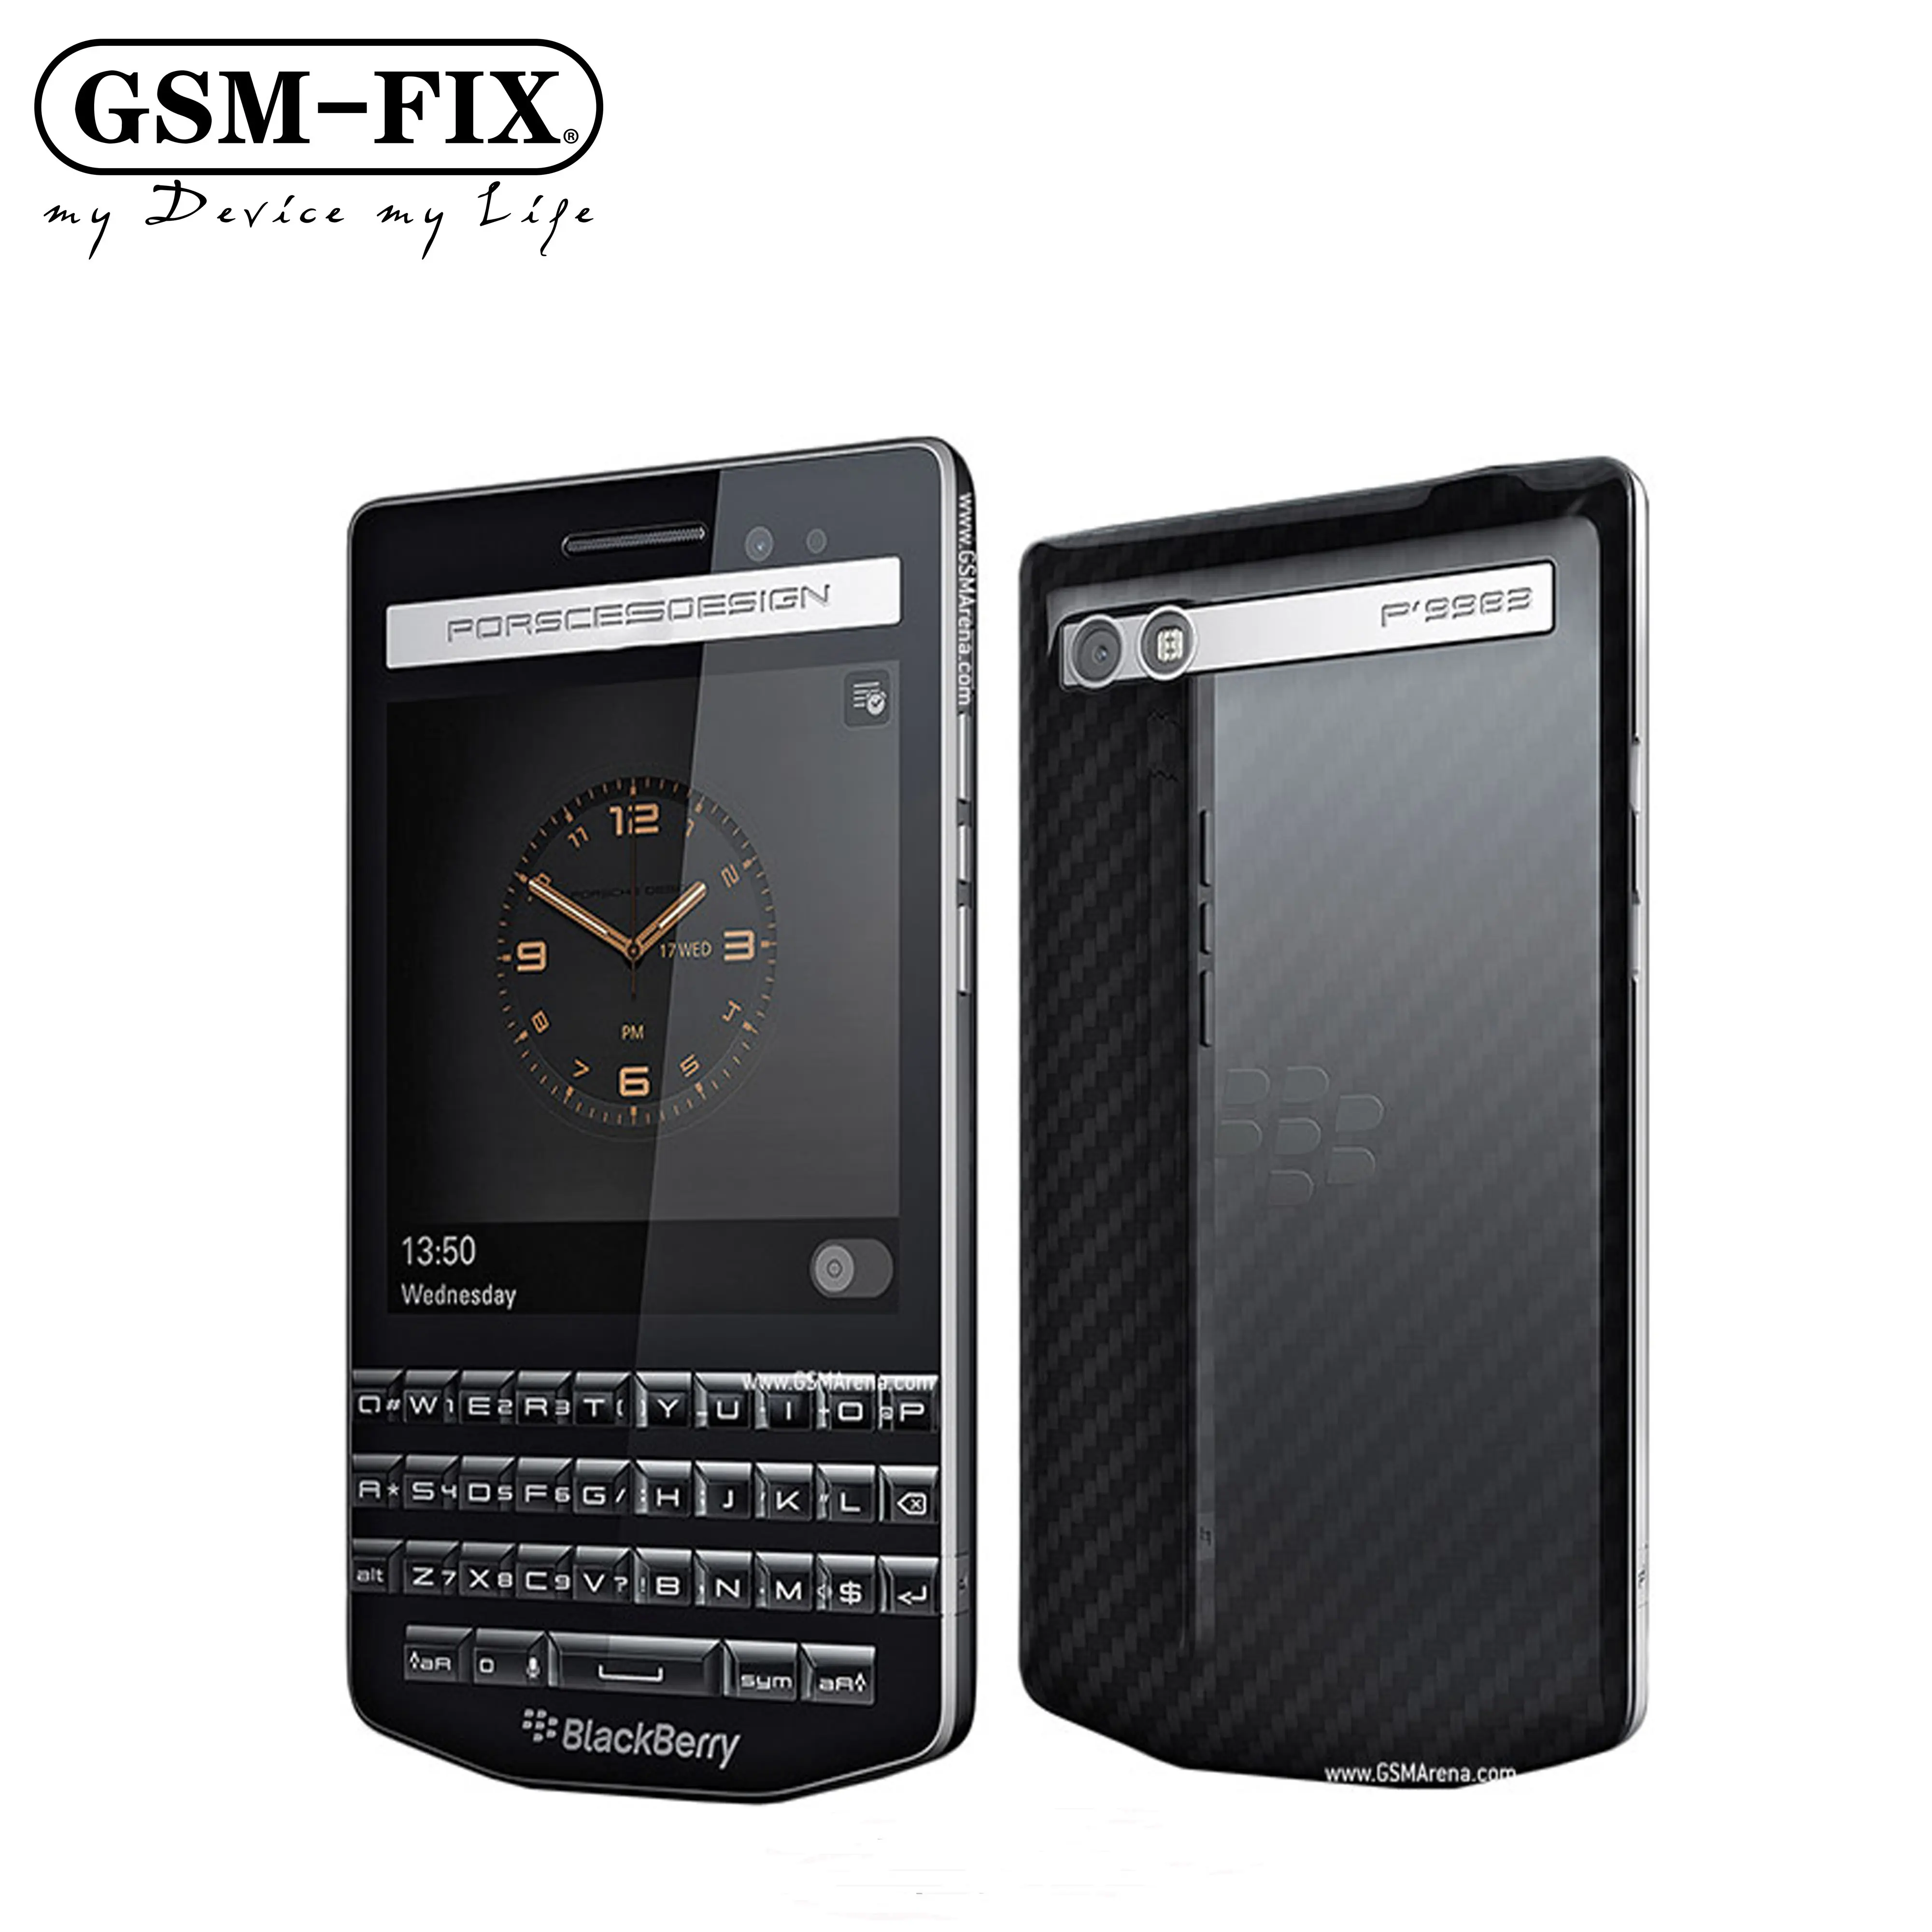 GSM-FIX pour BlackBerry Porsche Design P'9983 4G LTE téléphone portable 3.1 pouces IPS LCD Smart Snapdragon S4 Pro téléphone portable Dual Core